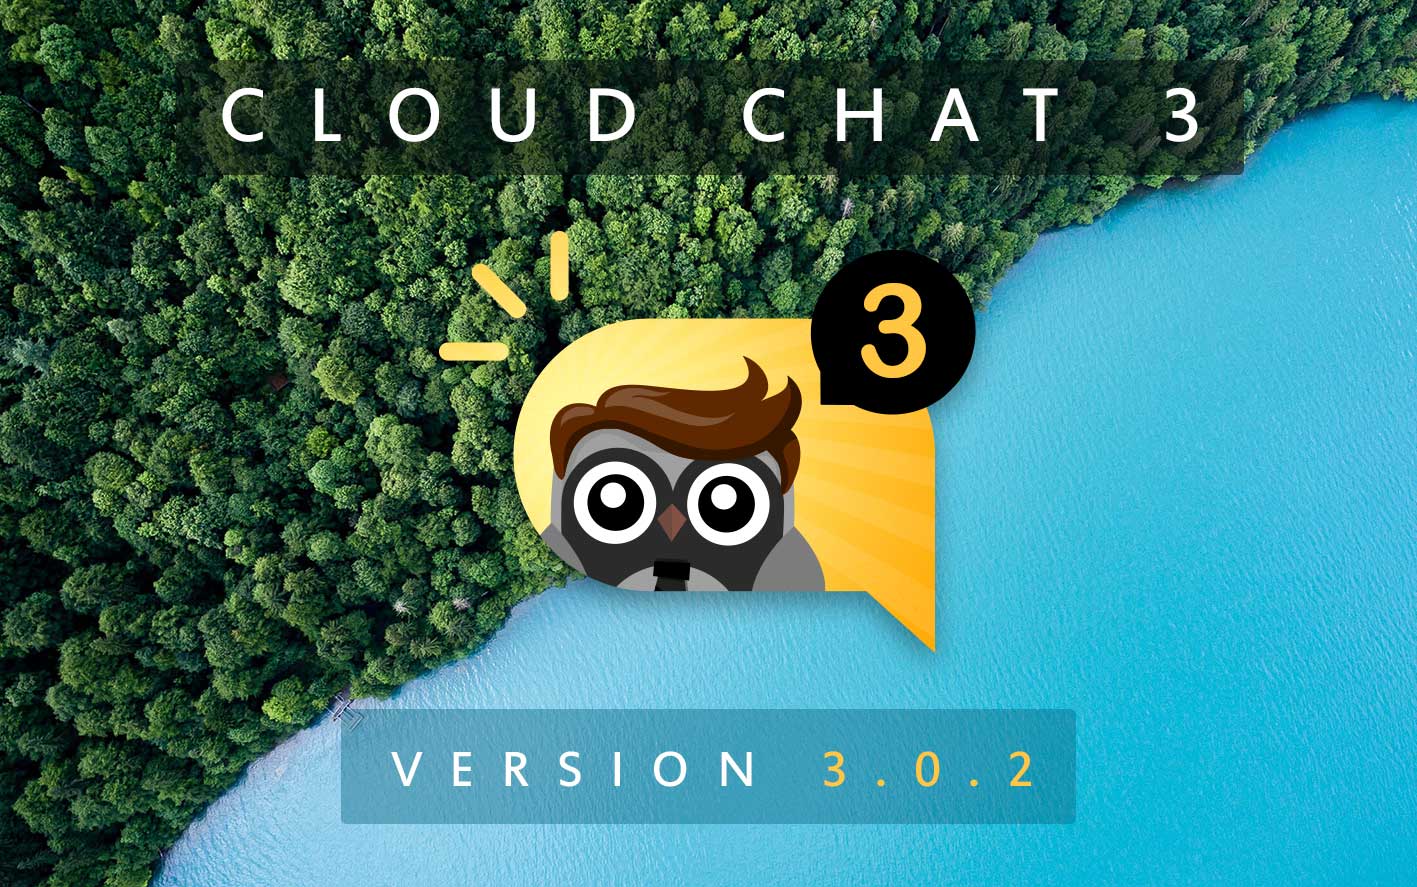 Cloud Chat 3 - Version 3.0.2